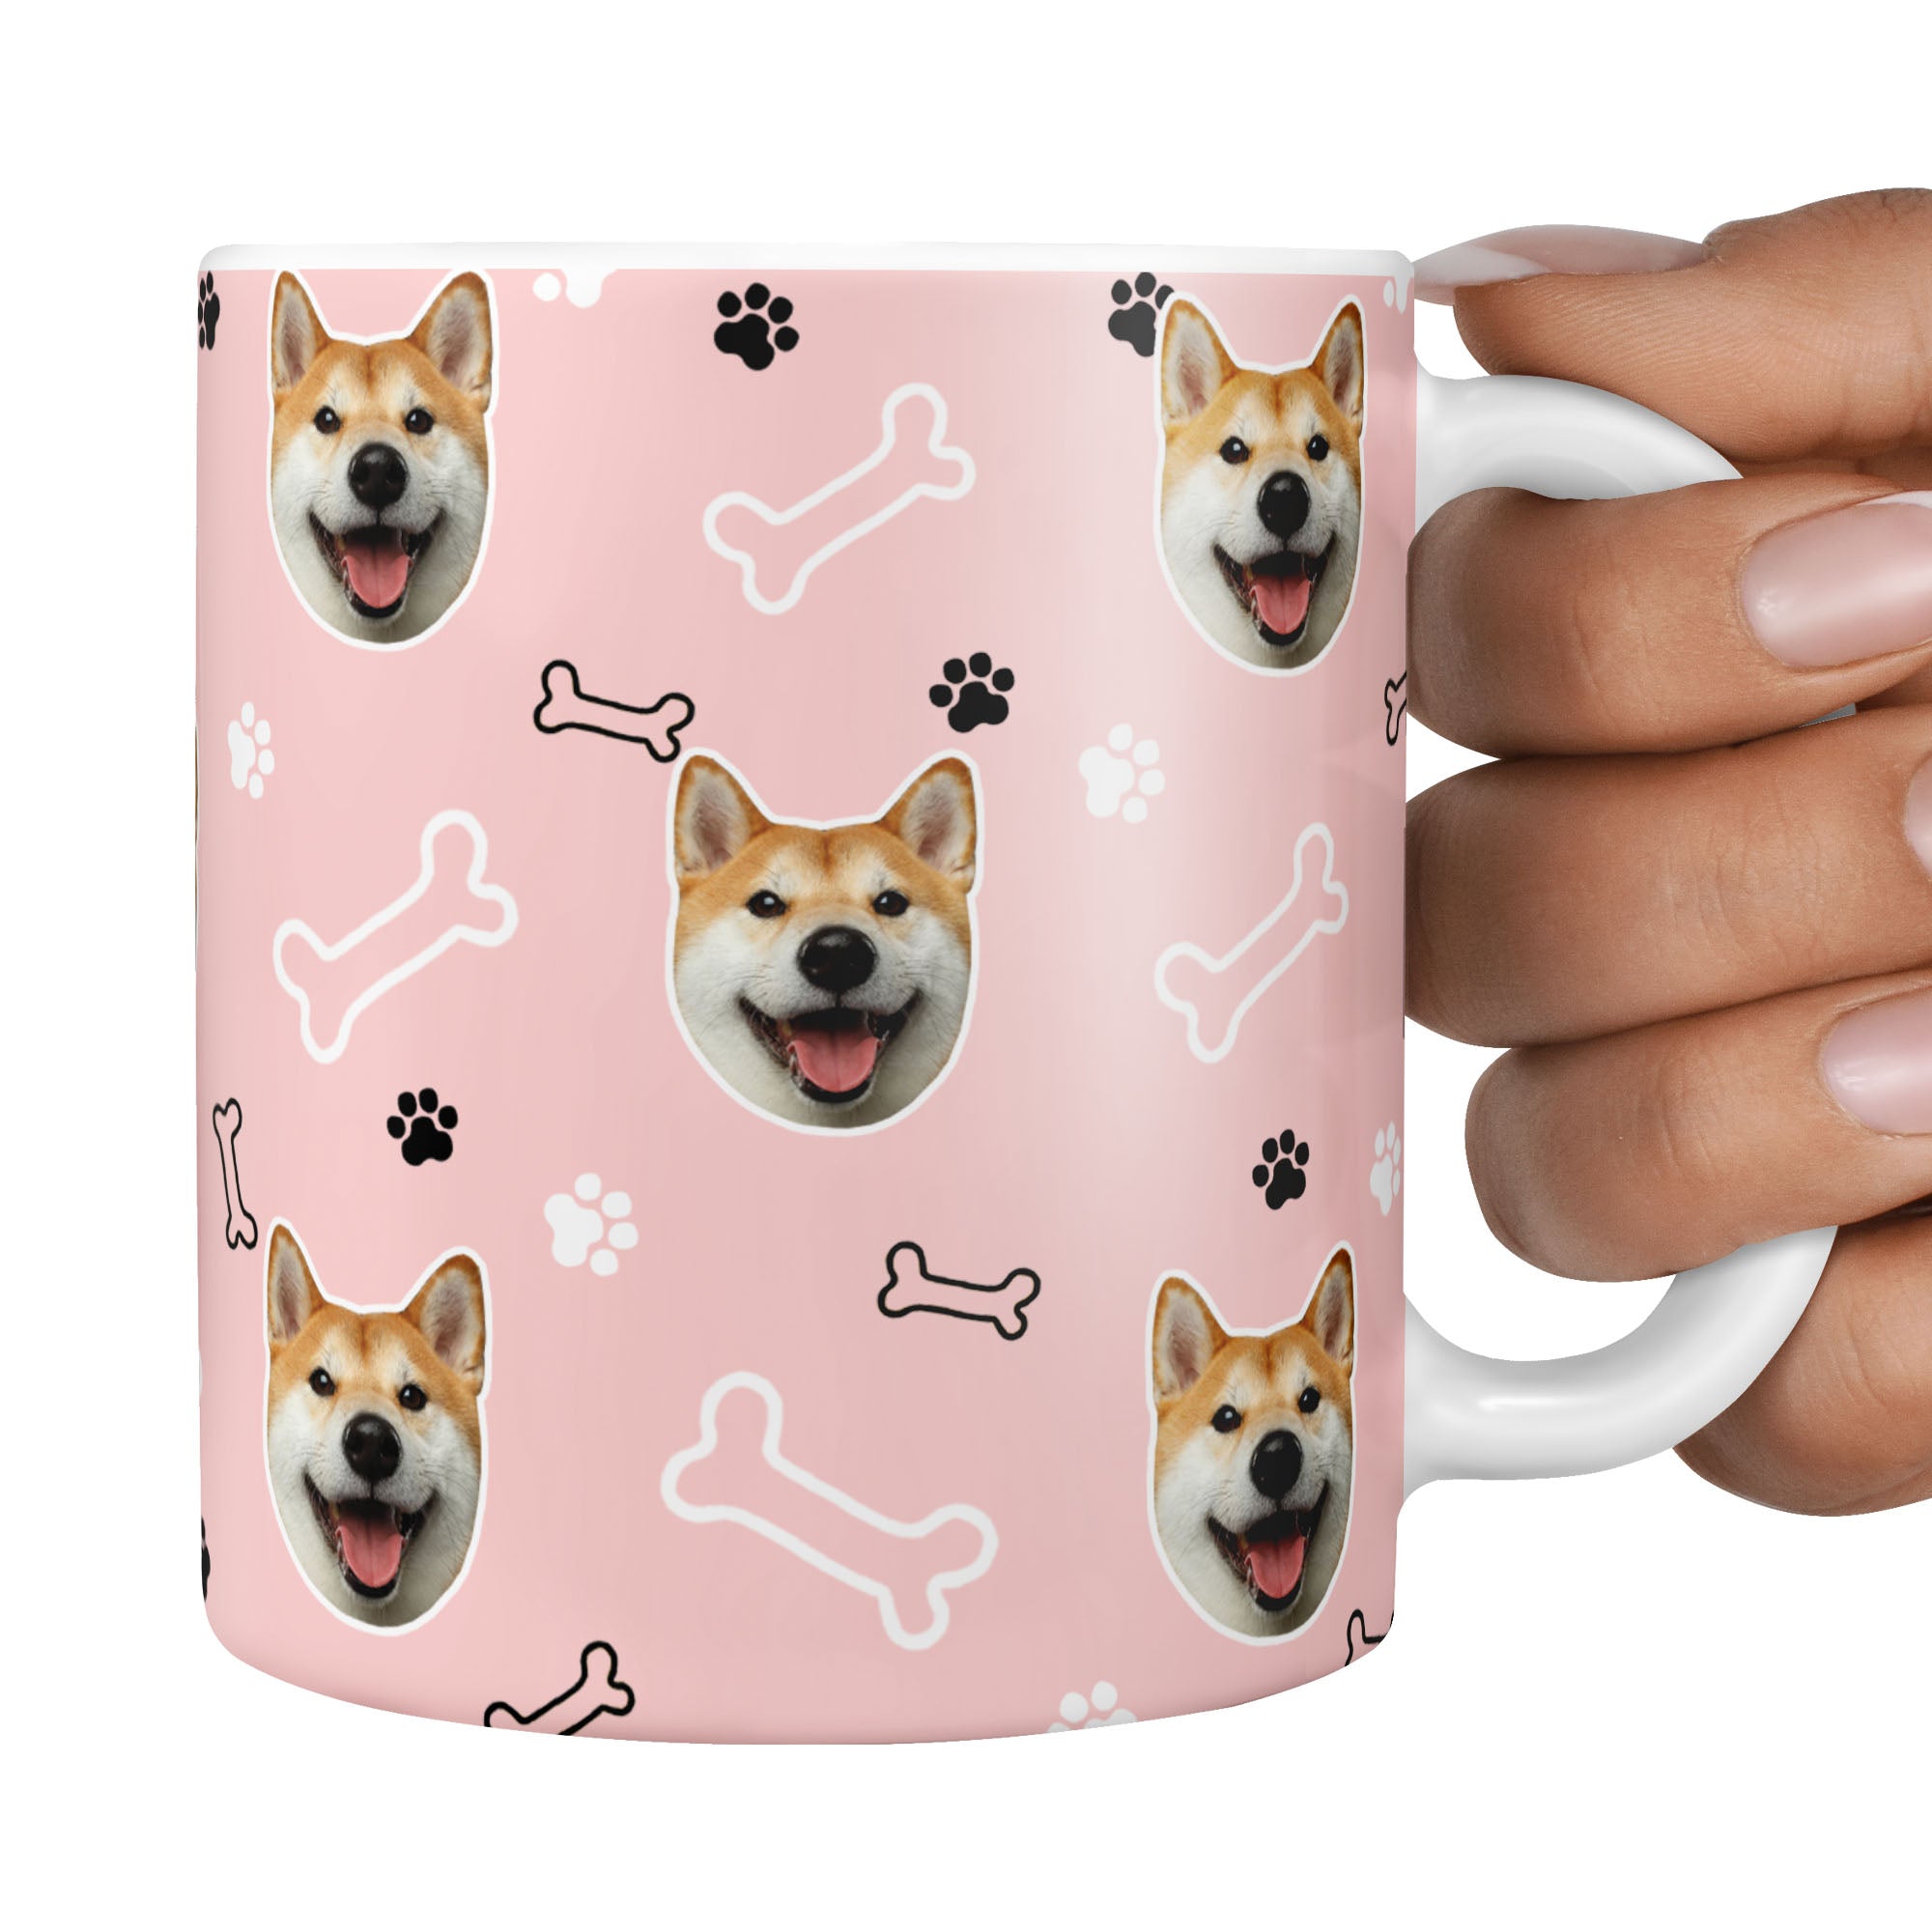 personalised dog mug featuring your dog